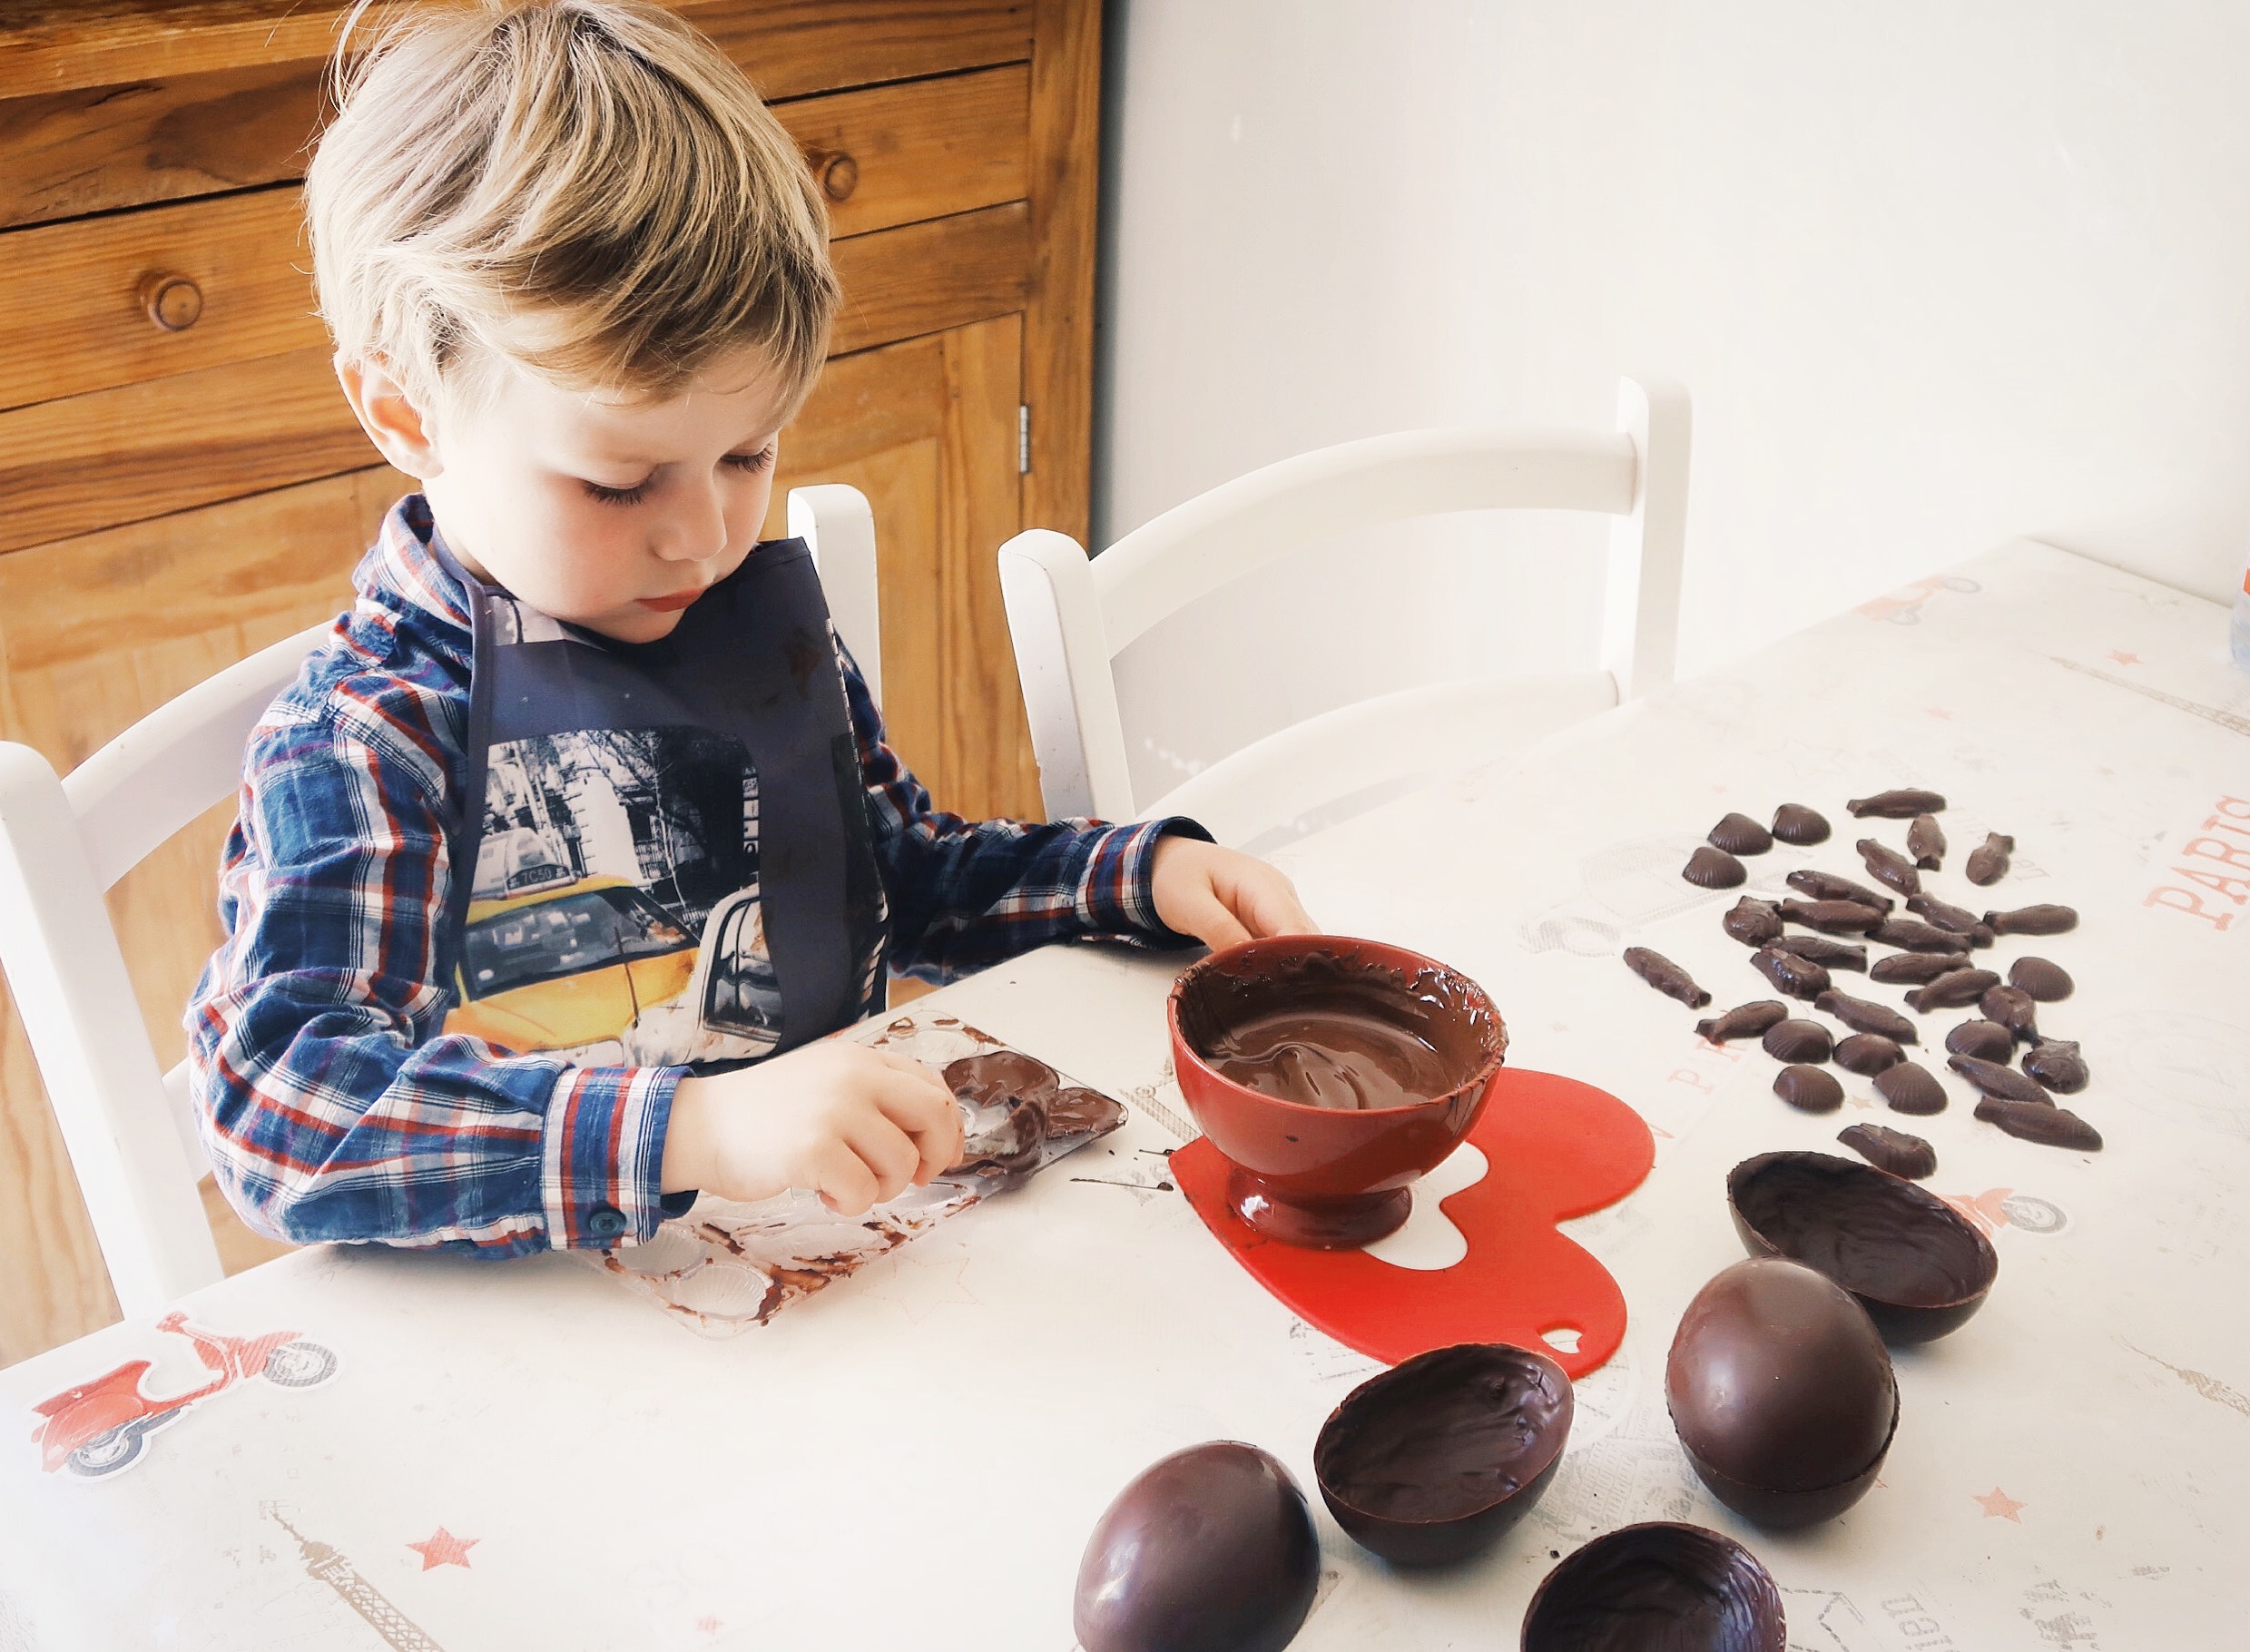 Atelier oeufs de Pâques au chocolat : 6 moules, décorations